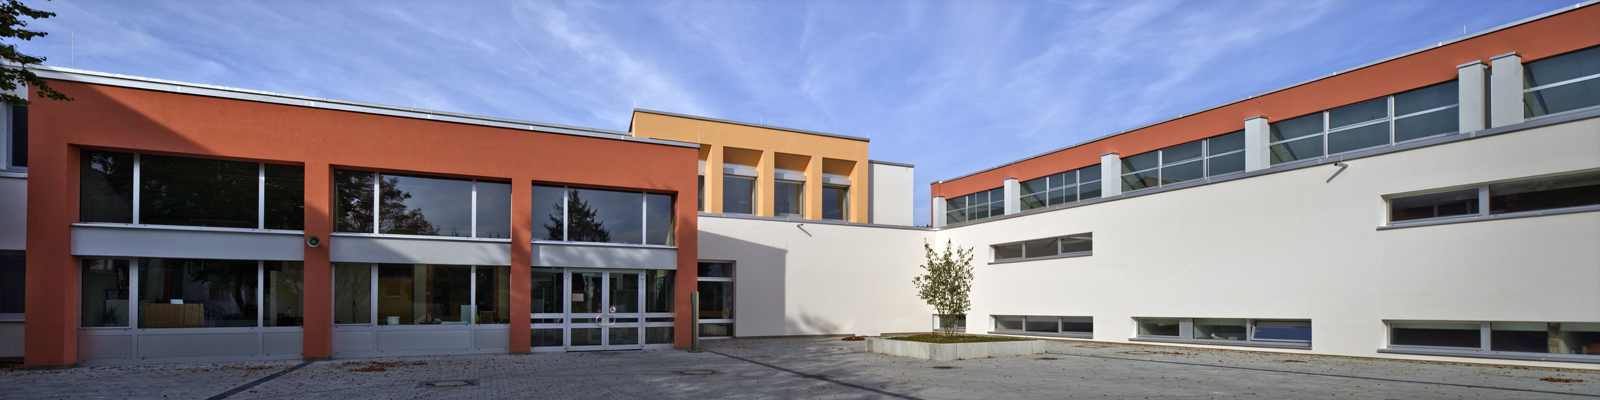 Ganztagesgrundschule, Tegernheim